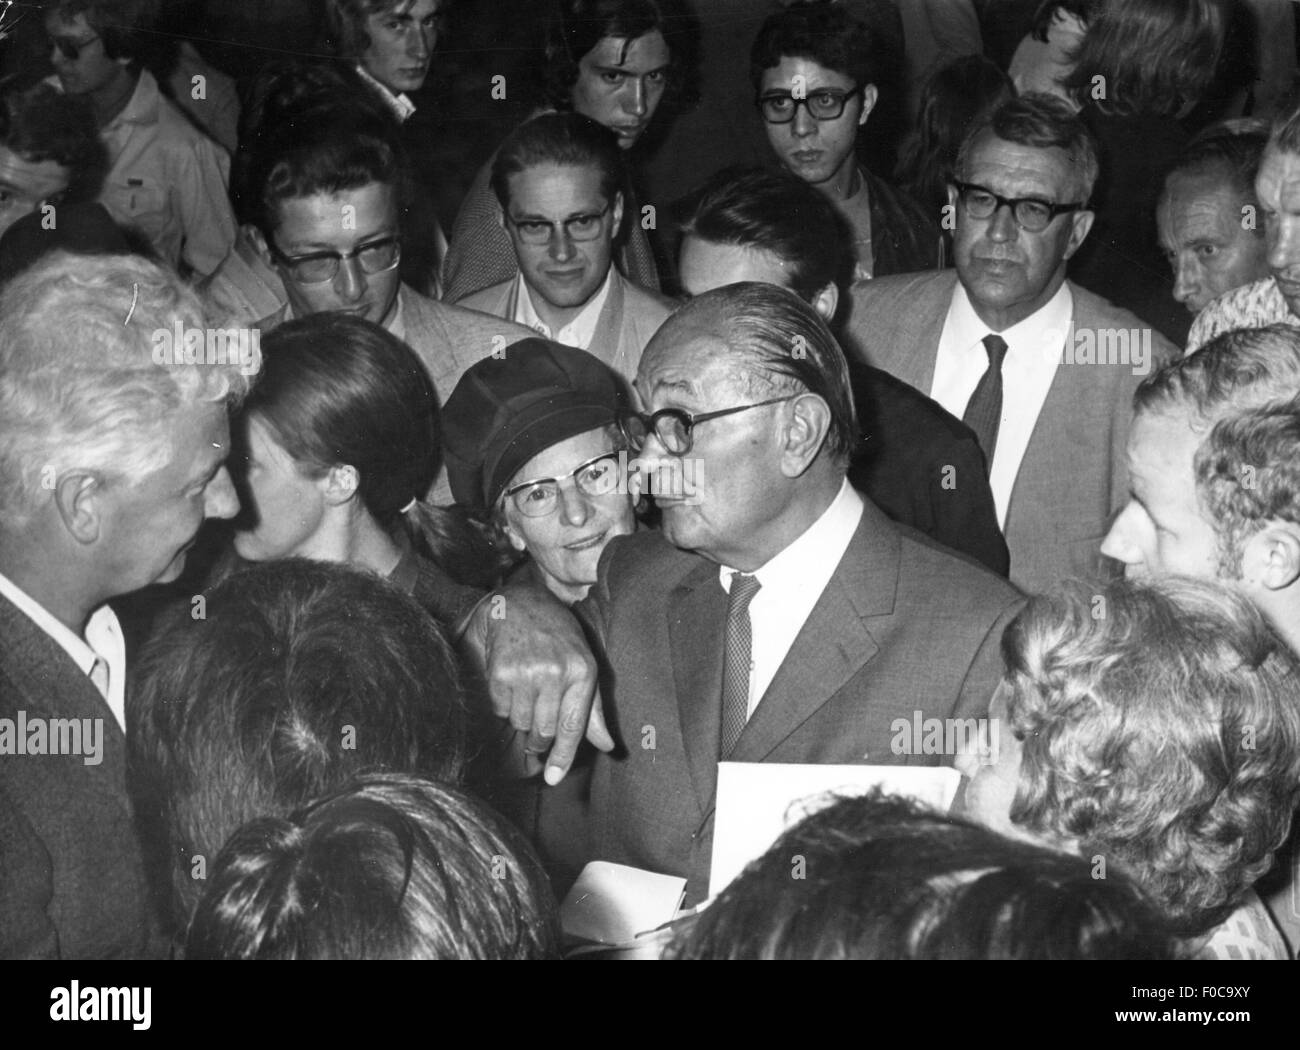 Niemoeller, Martin, 14.1.1892 - 6.3.1984, deutsche Theologin, mit Frau Elisabeth bei einer Veranstaltung, 1971, Stockfoto